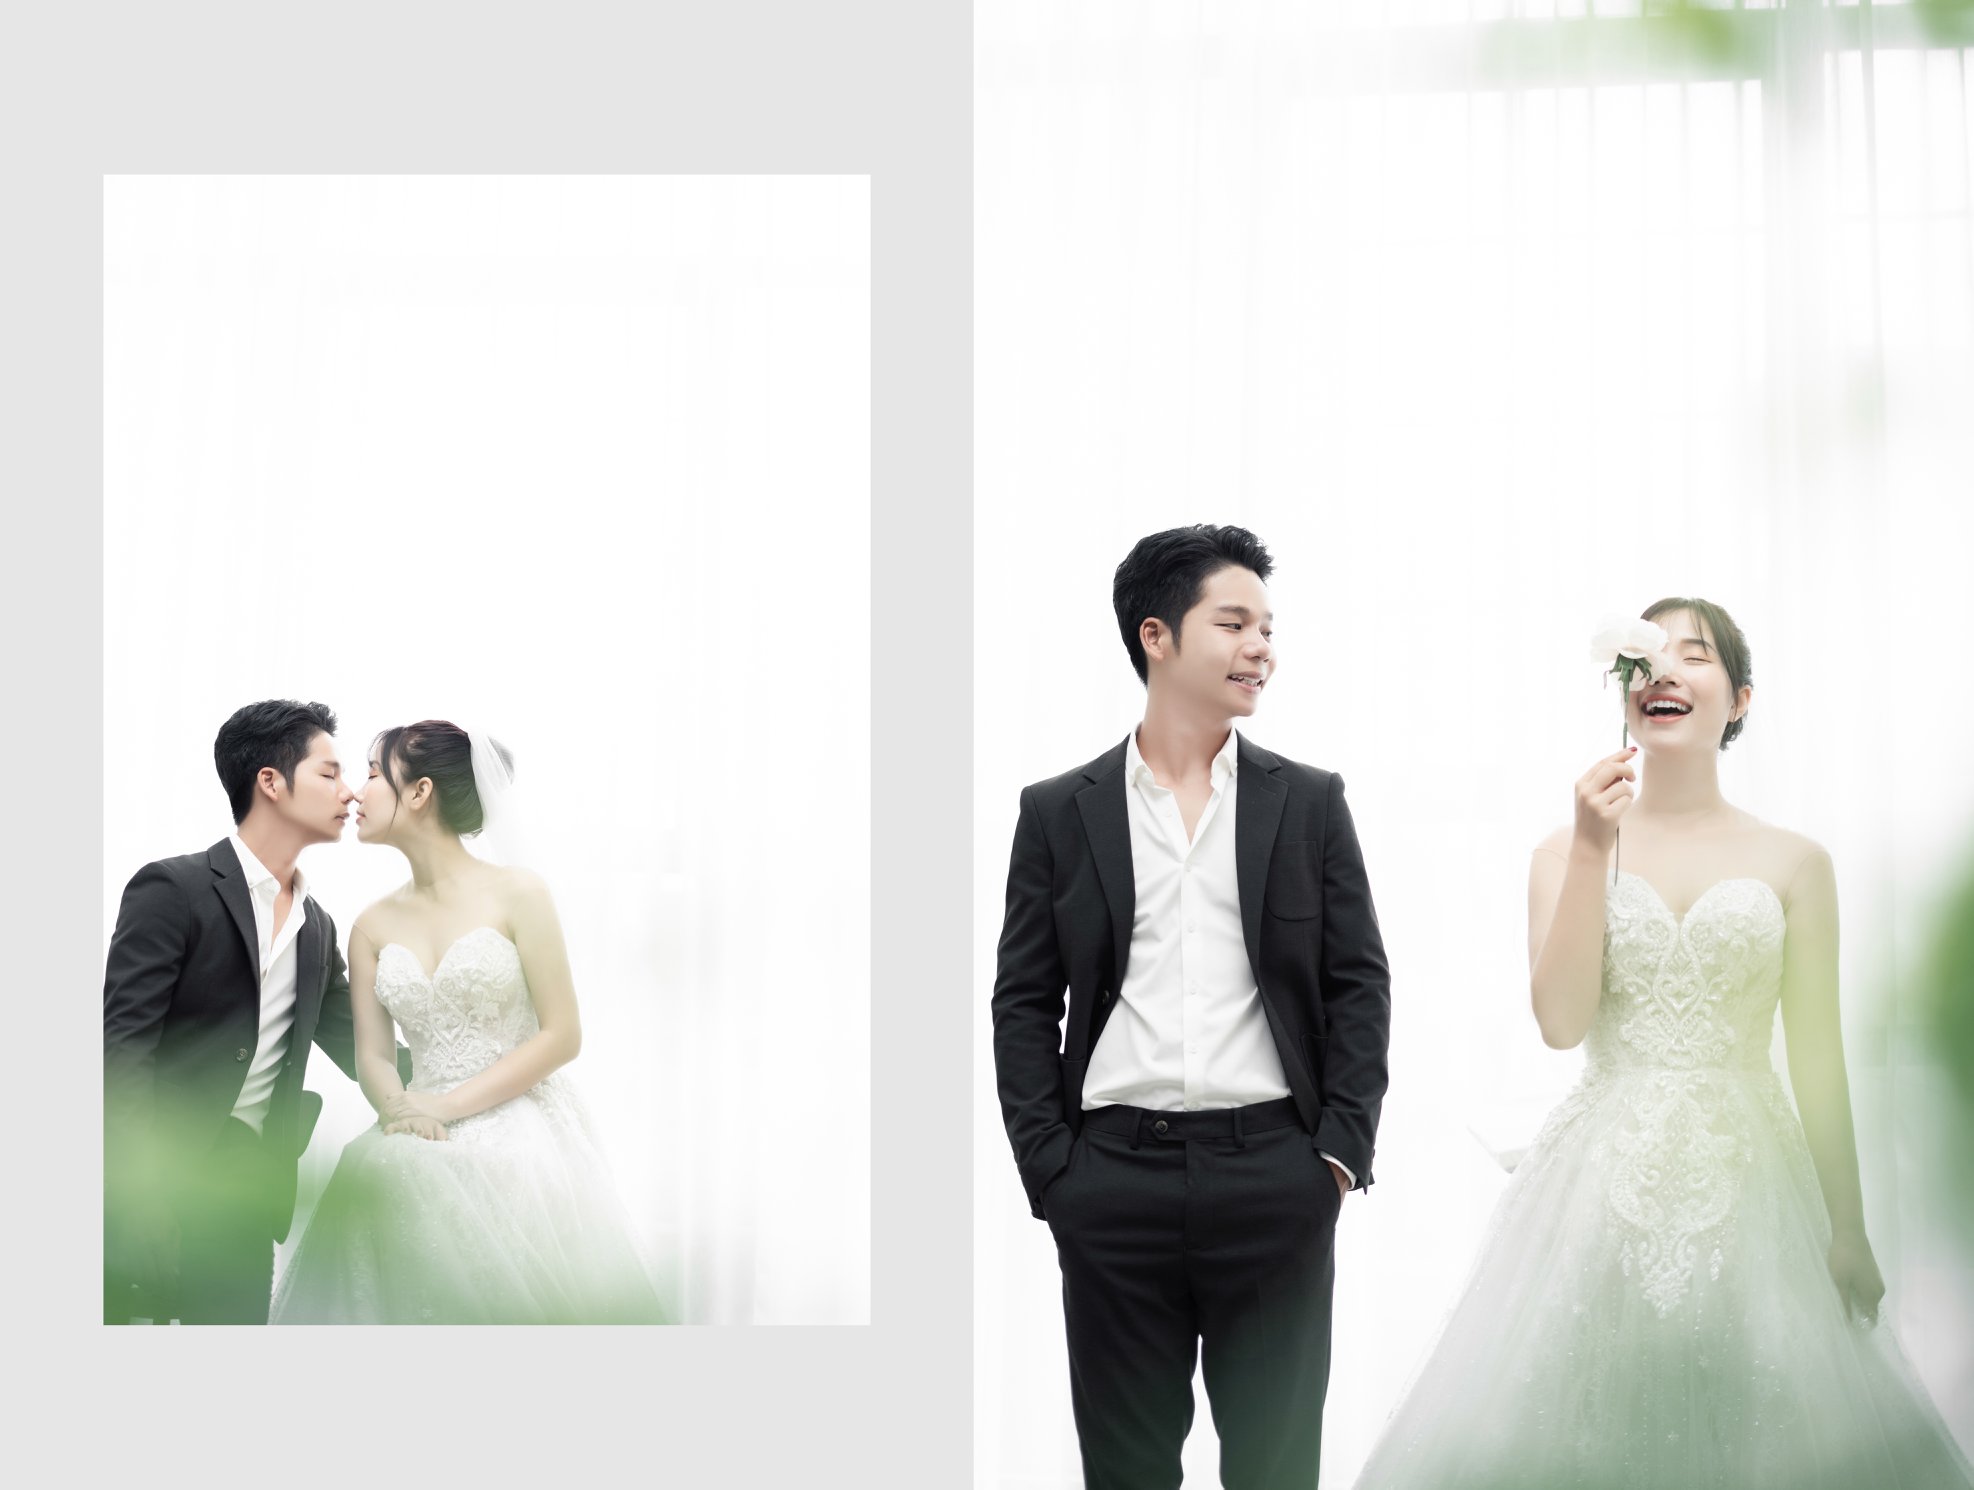 Korean style wedding photo album